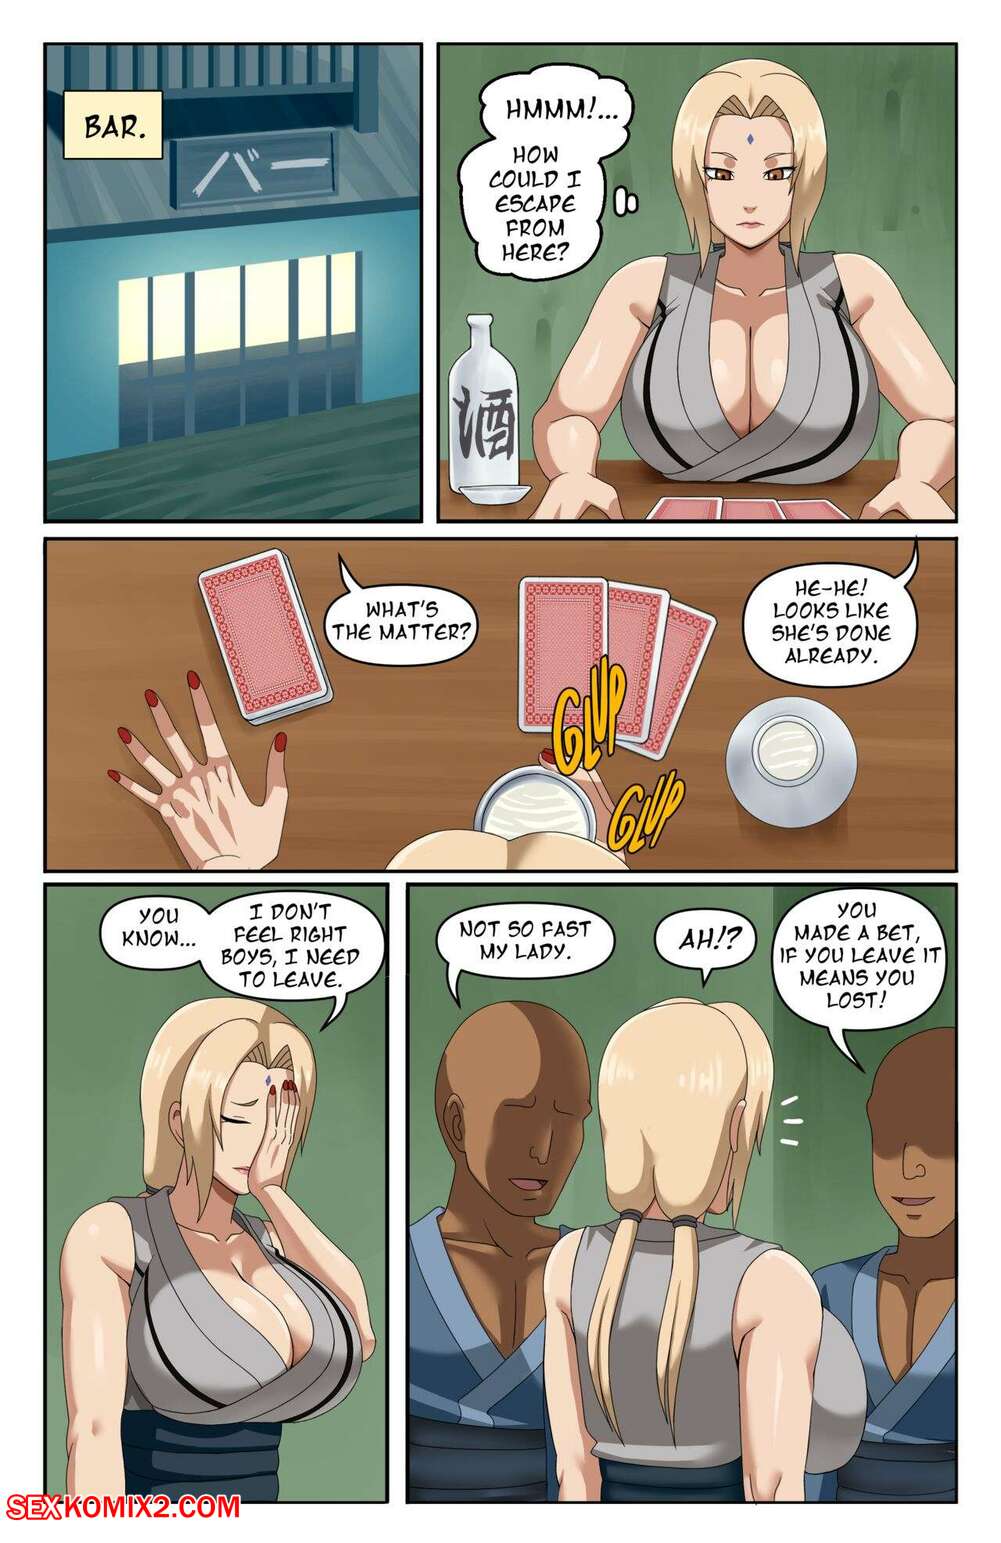 Xxx Lady Tsunade Fucking Cartoons - âœ…ï¸ Porn comic New Tsunade Comic. Pink Pawg Sex comic blonde MILF lost | Porn  comics in English for adults only | sexkomix2.com